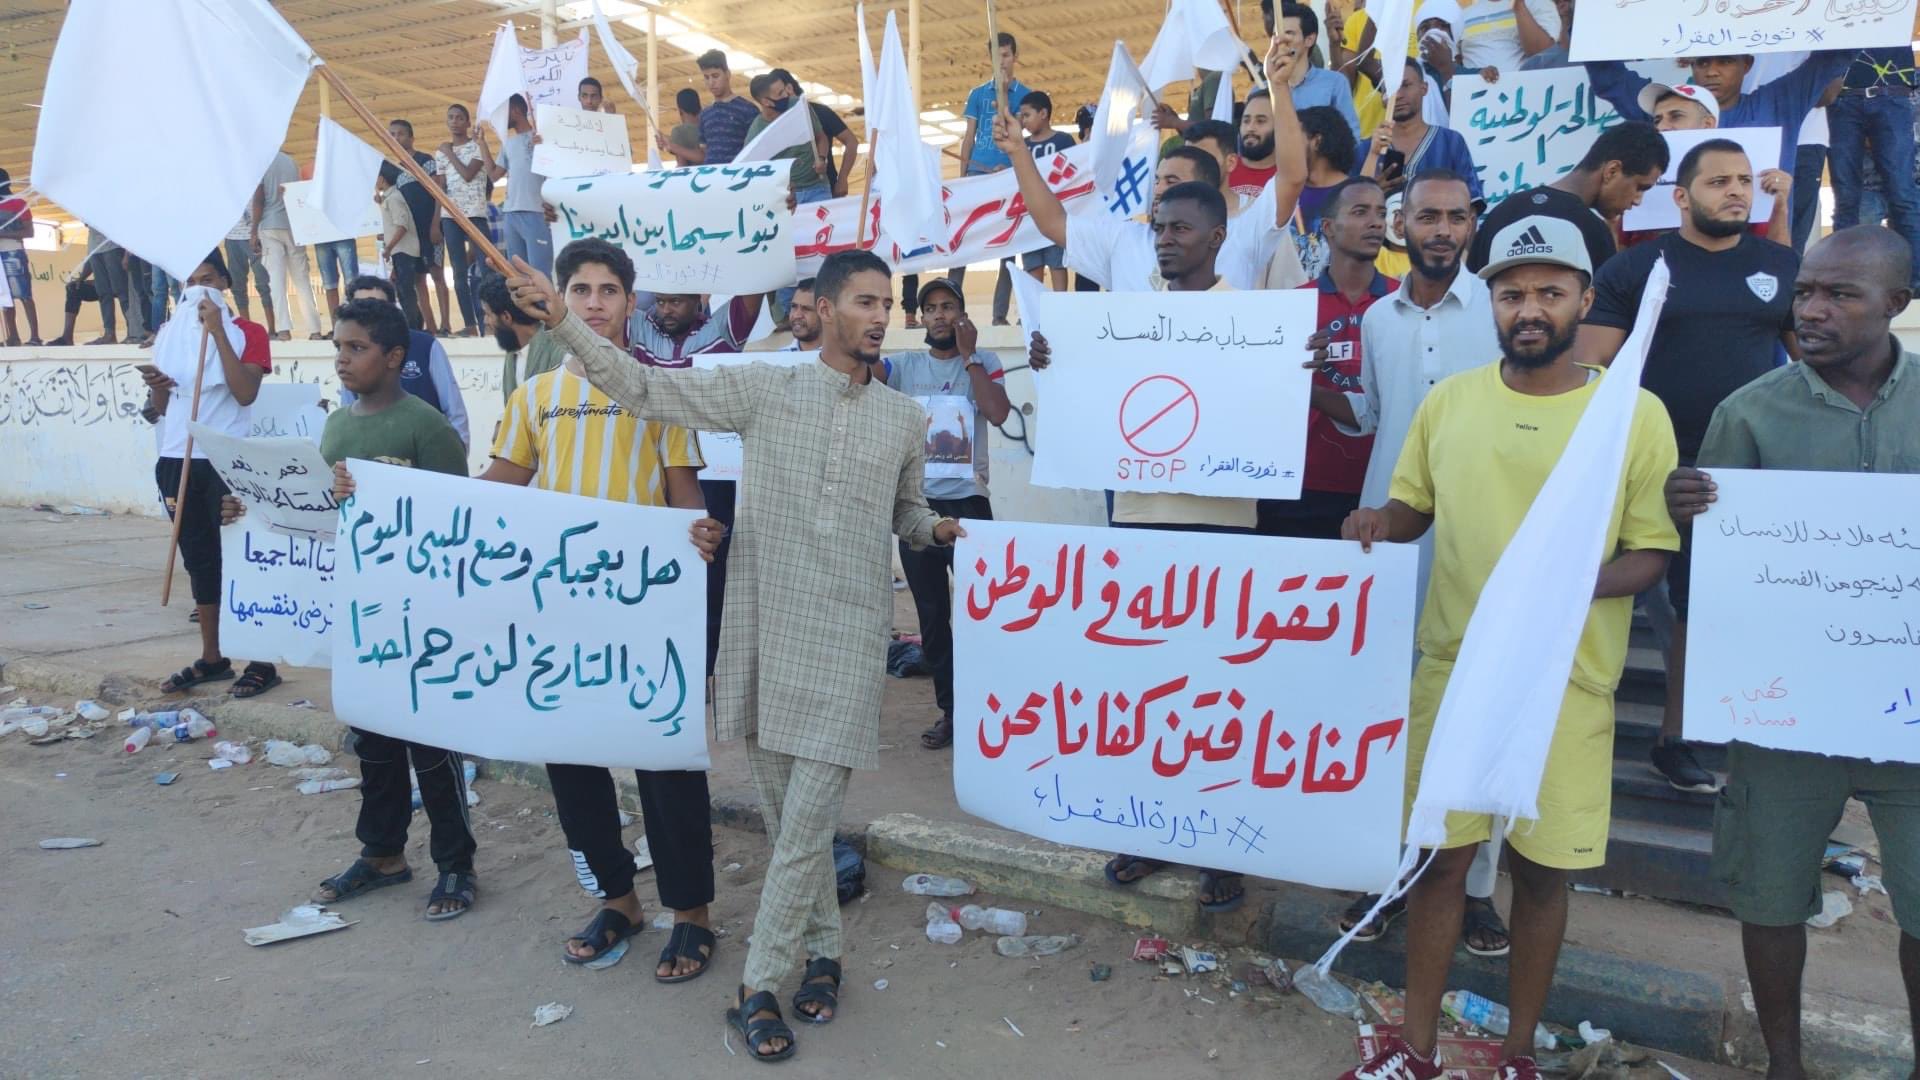 Libya da barışçıl protestolarda ateş açan 'sızdırılmış' kişiler hakkında soruşturma başlatıldı #1